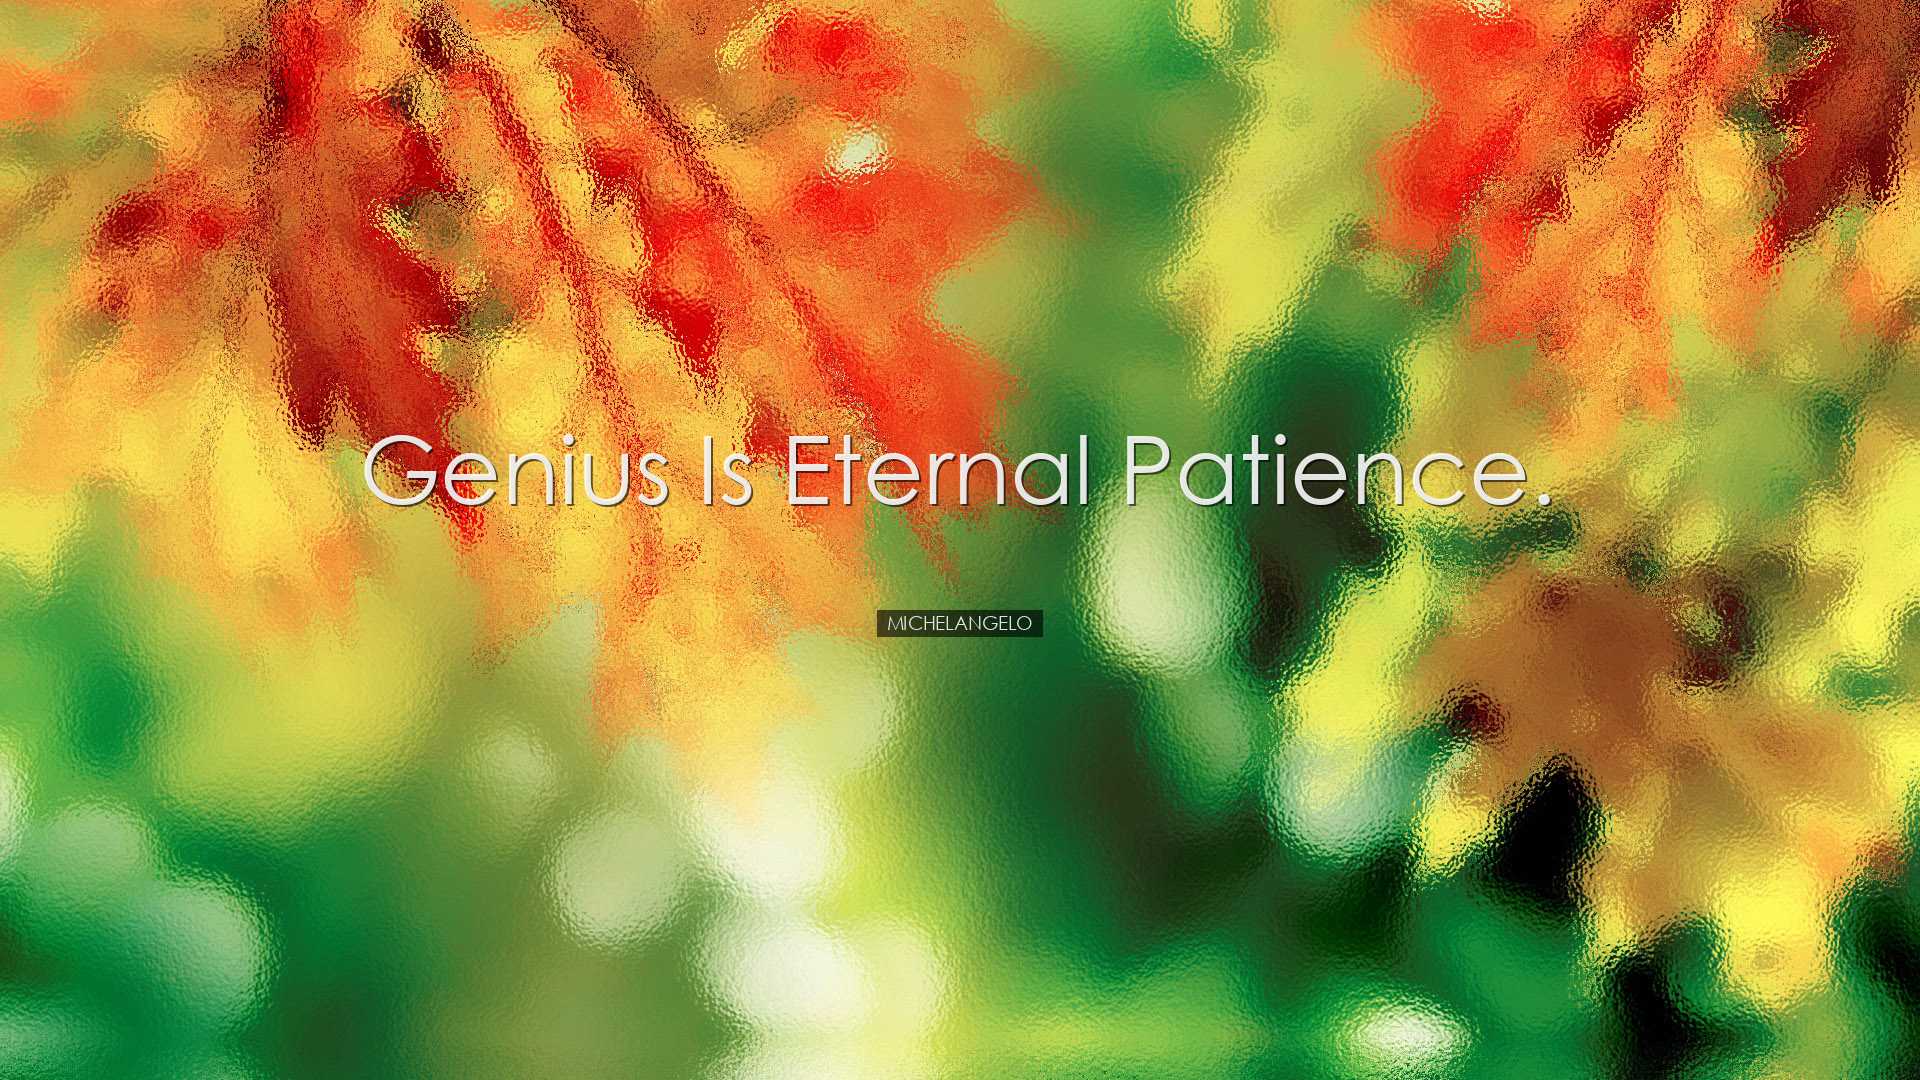 Genius is eternal patience. - Michelangelo